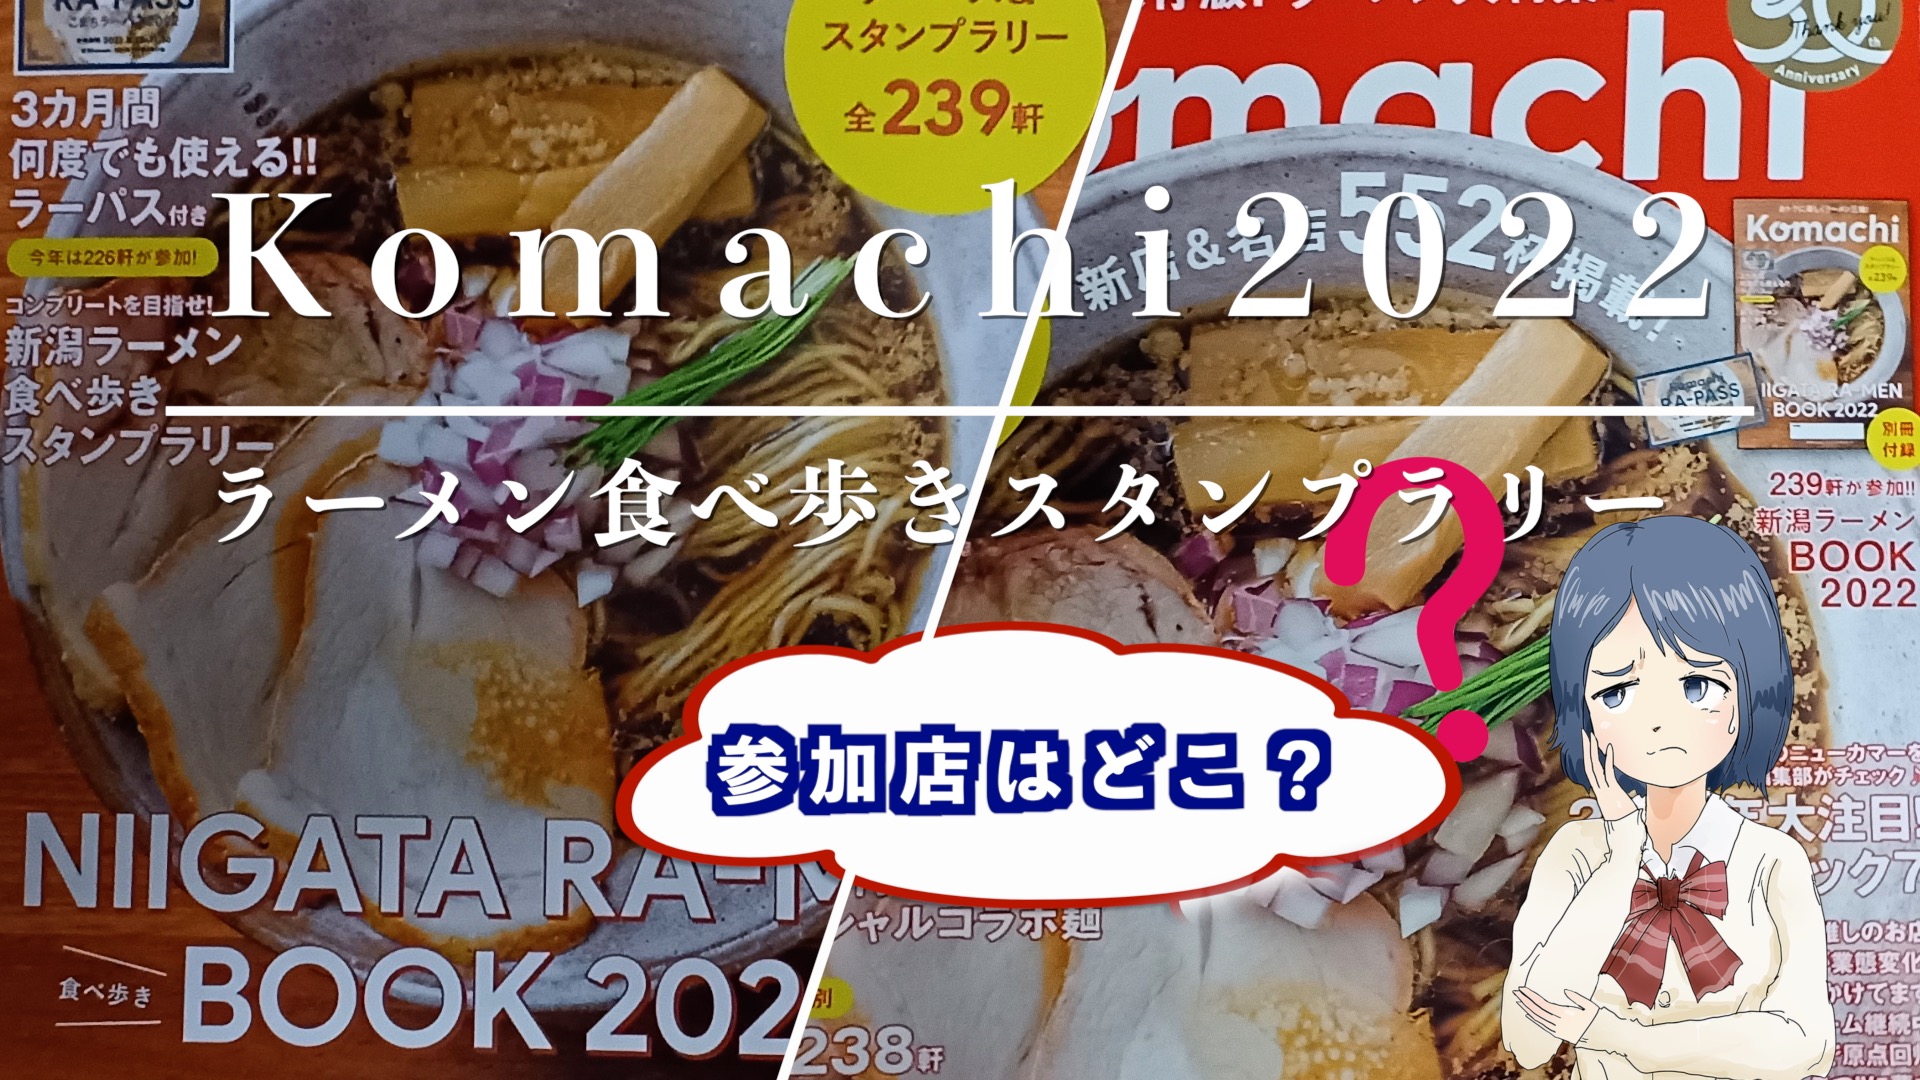 『komachiスタンプラリー2022』のアイキャッチ画像